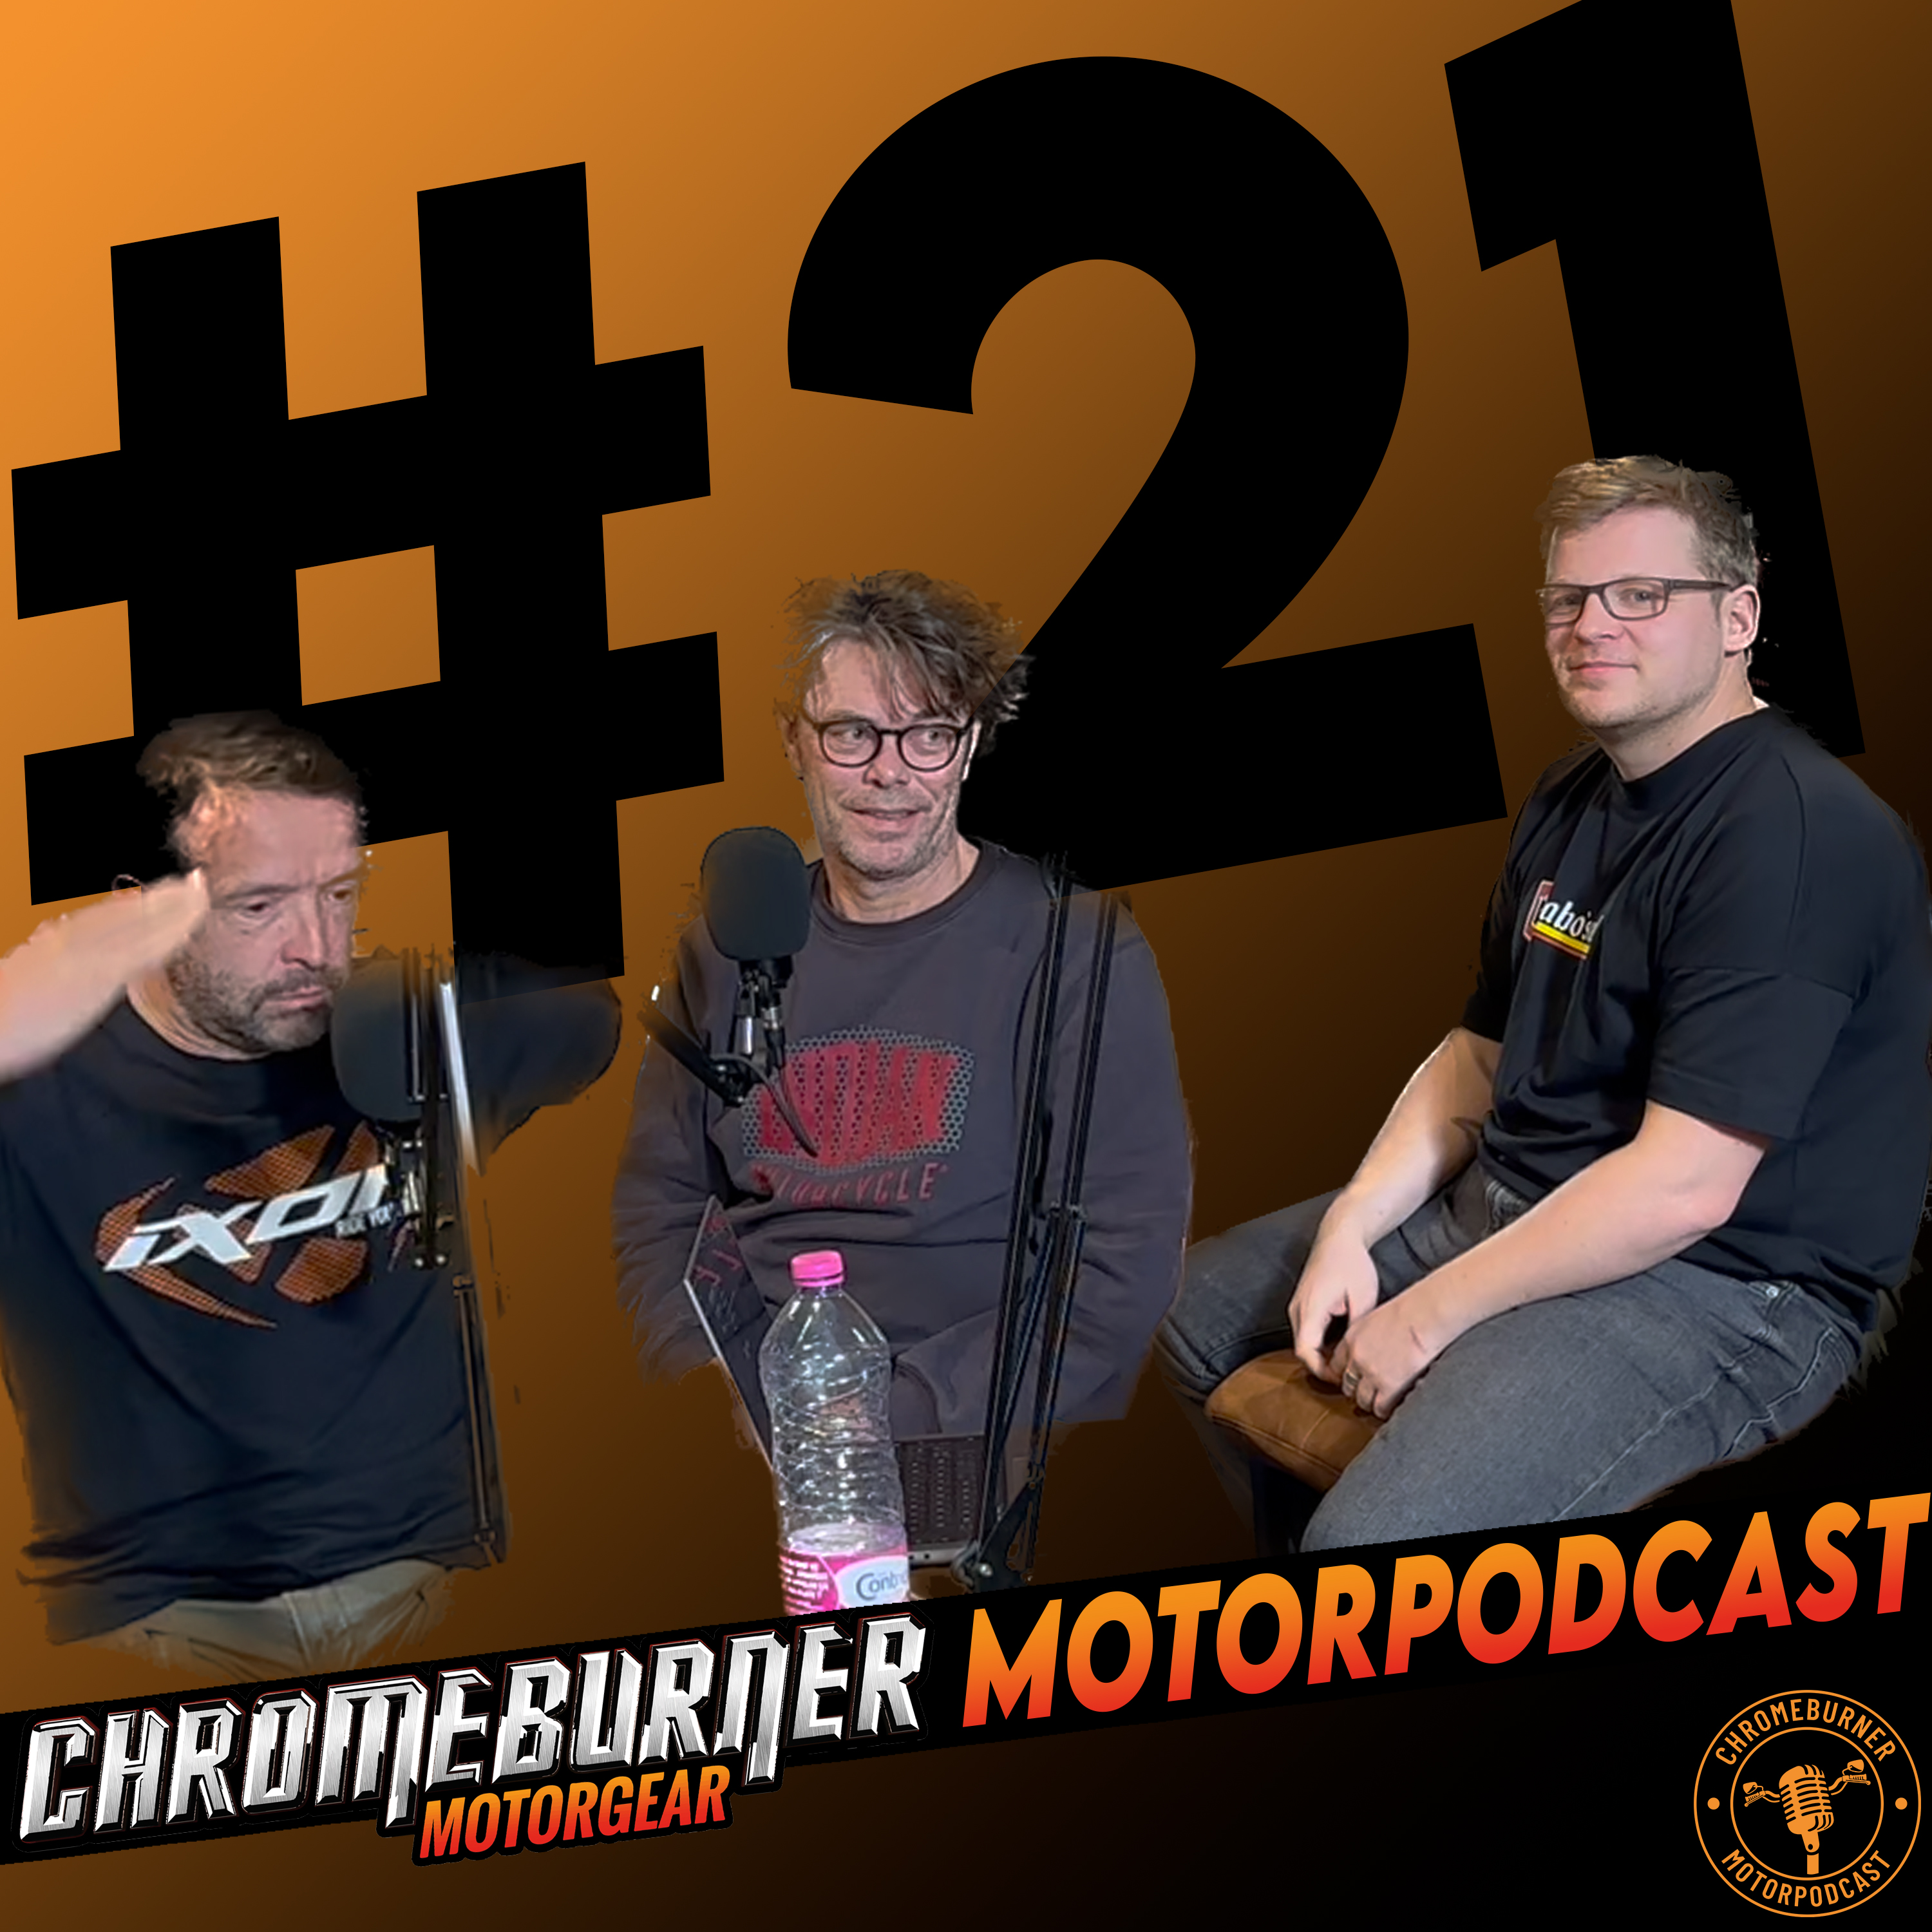 ChromeBurner Motorpodcast #21: MotorSalon vs. Motorbeurs,  Dakar & IJsspeedway, KNMV en meer!